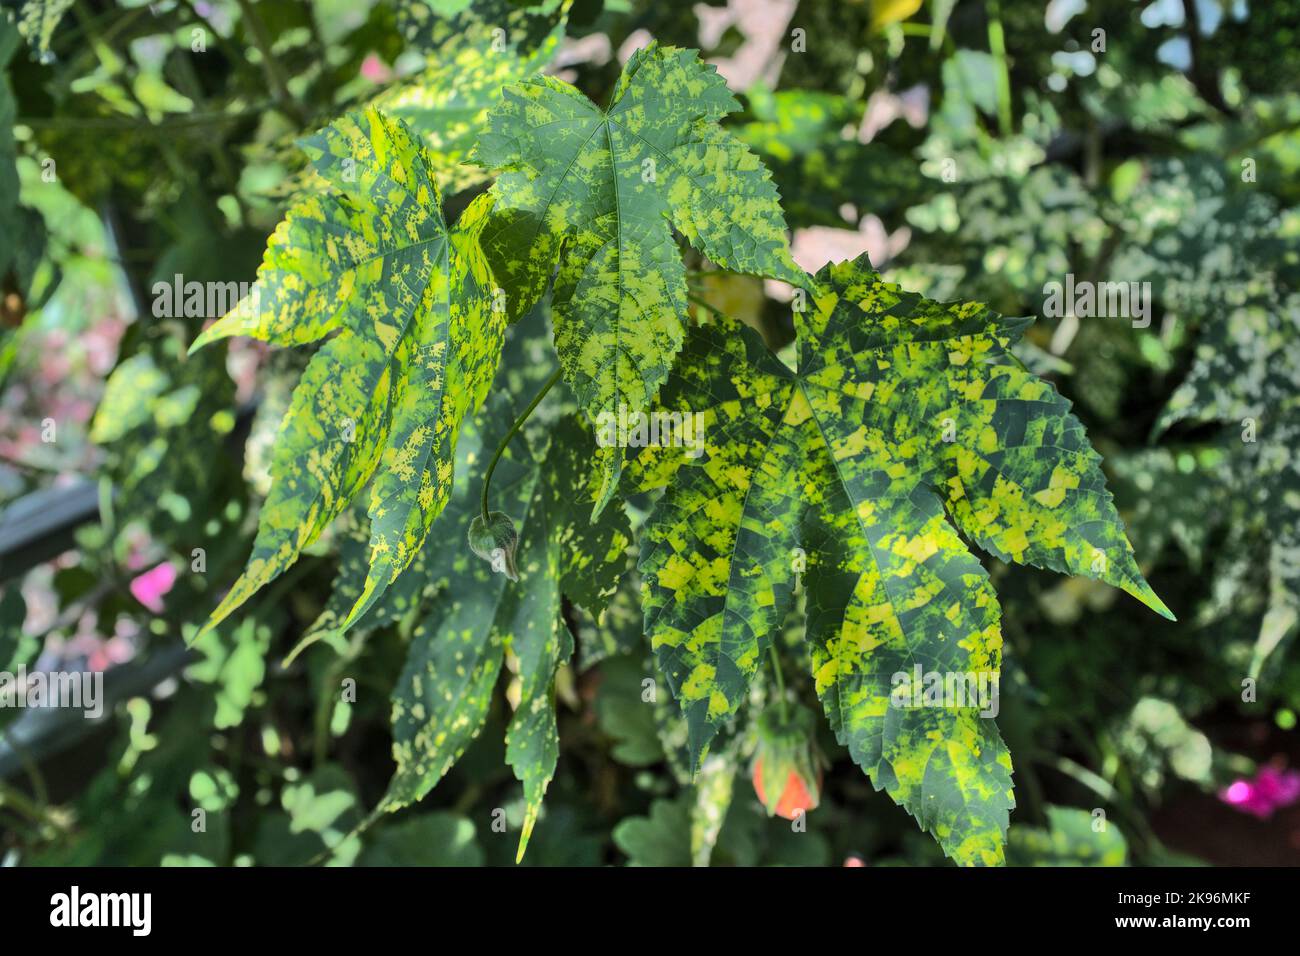 Abutilon Indian Mallow foliage Stock Photo